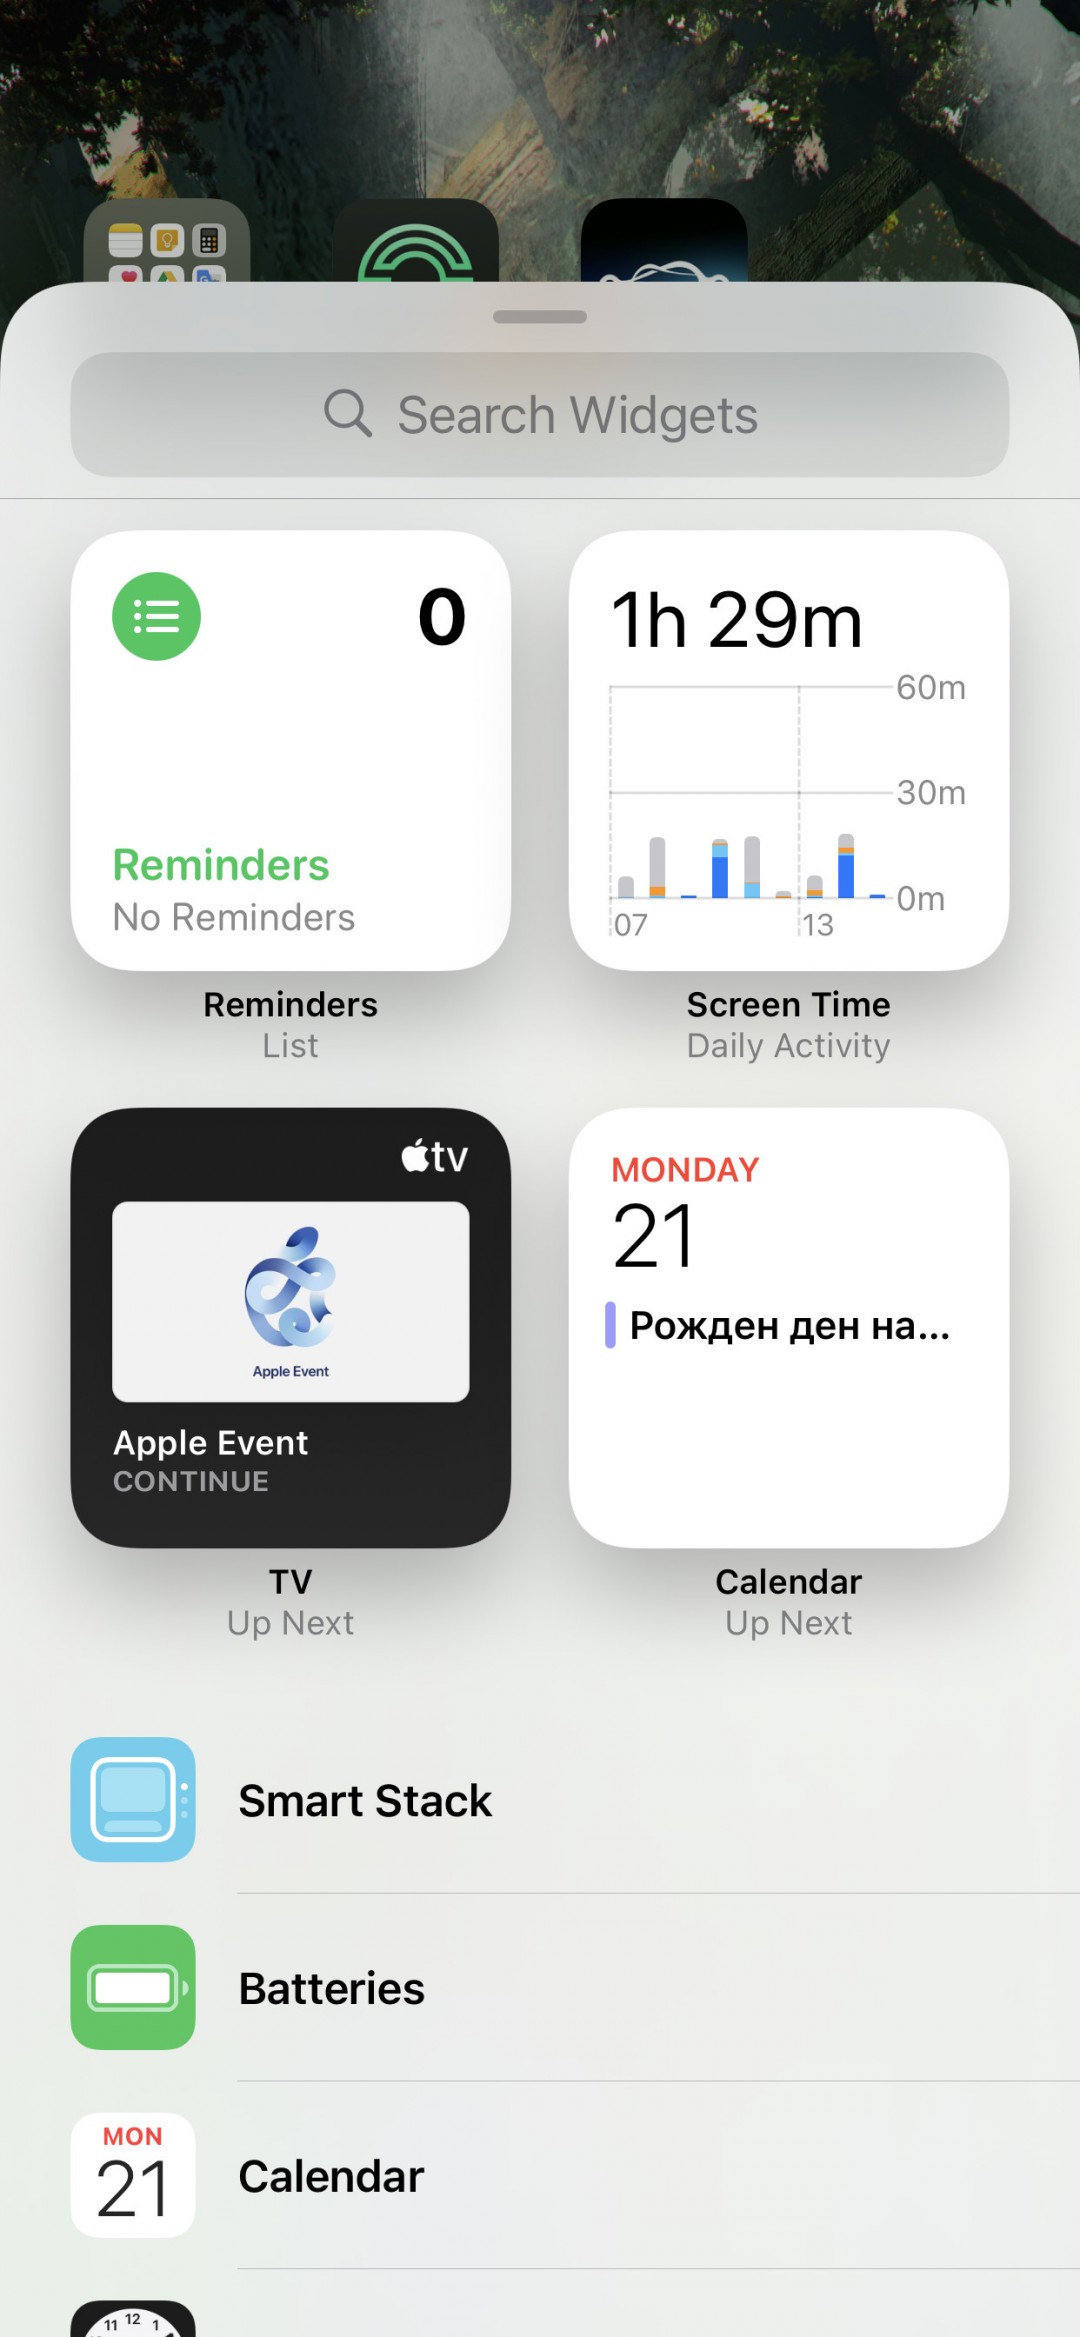 بررسی کامل و تخصصی سیستم عامل iOS 14 اپل: بیشترین تغییرات تا به امروز